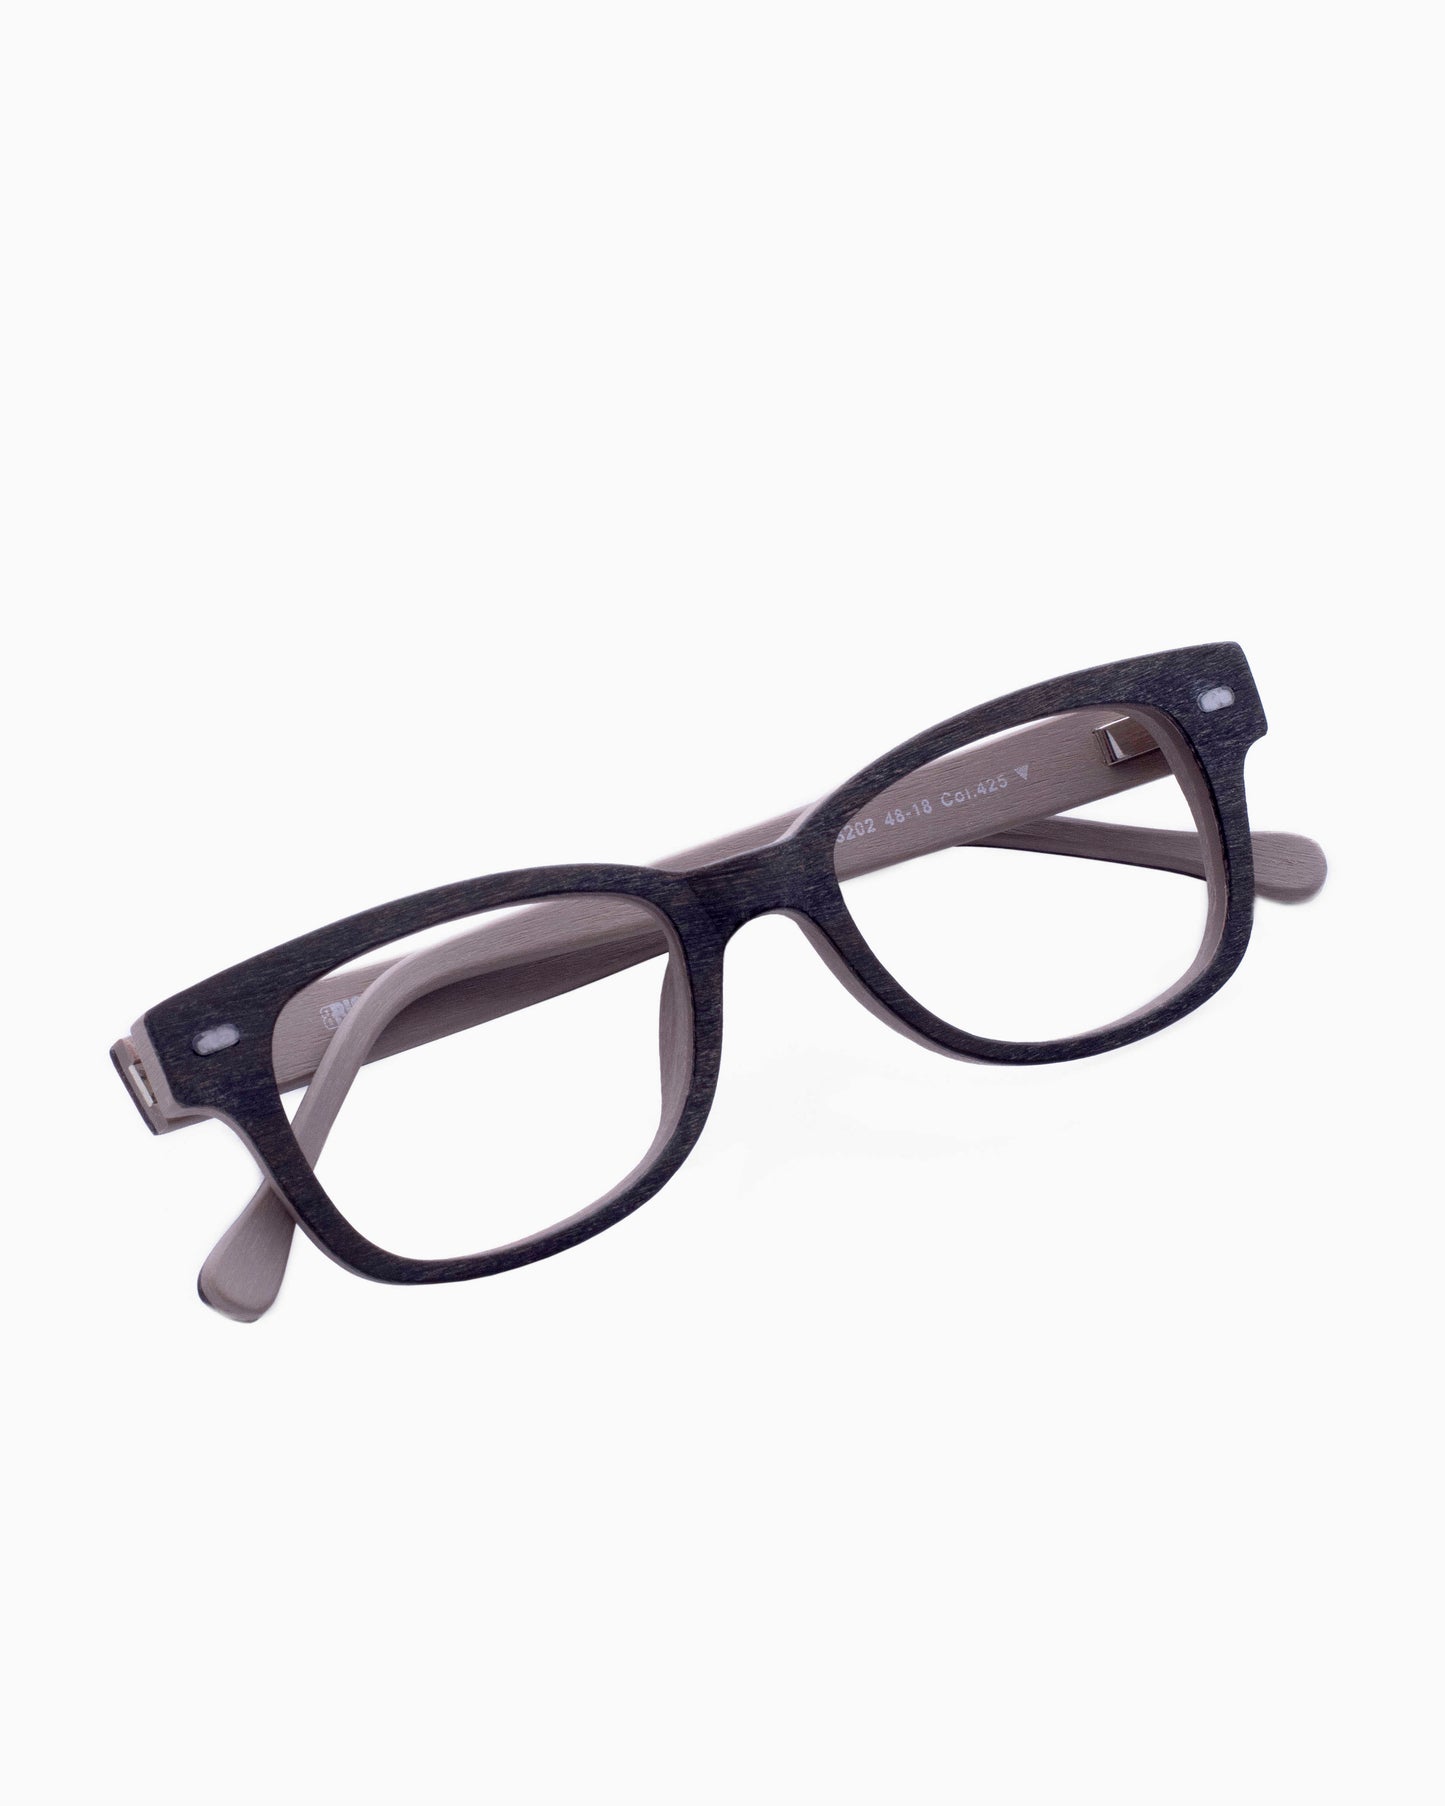 BBig - 3202 - 425 | glasses bar